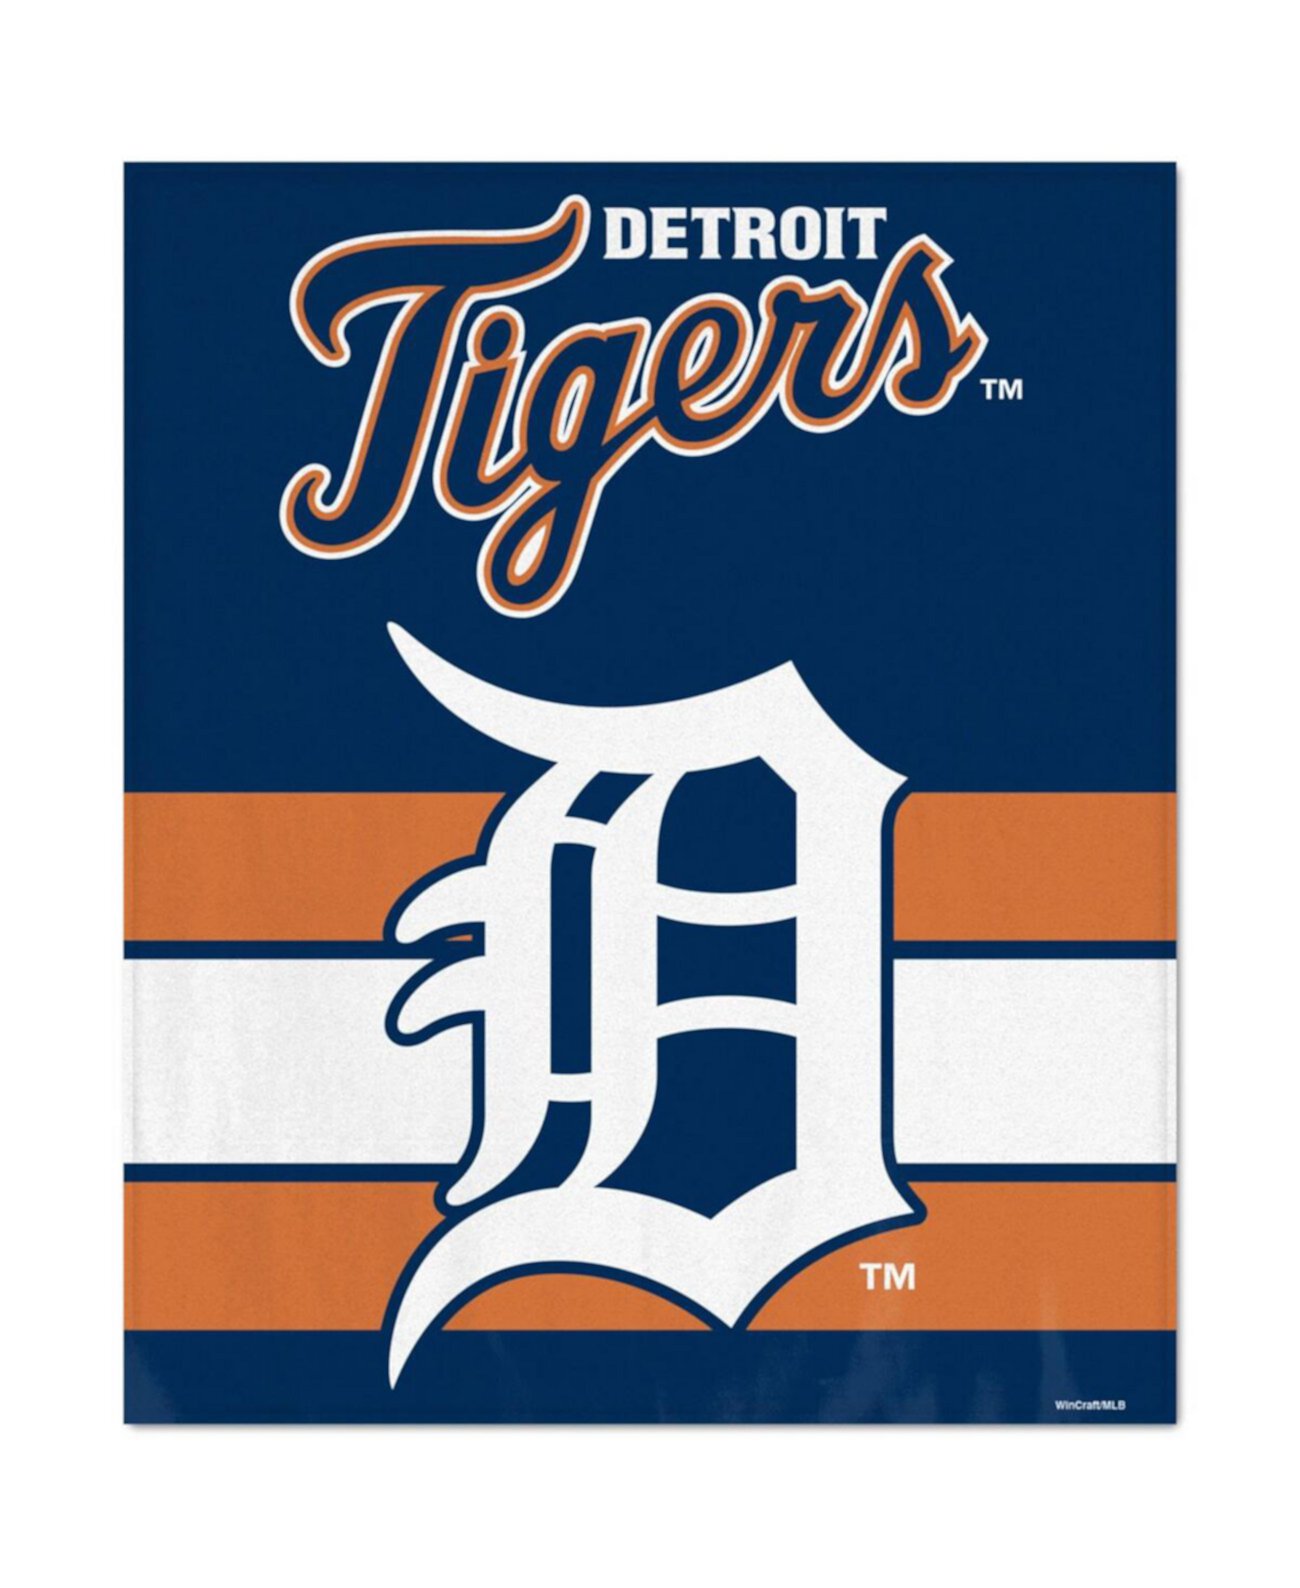 Ультраплюшевое покрывало Detroit Tigers размером 50 x 60 дюймов Wincraft